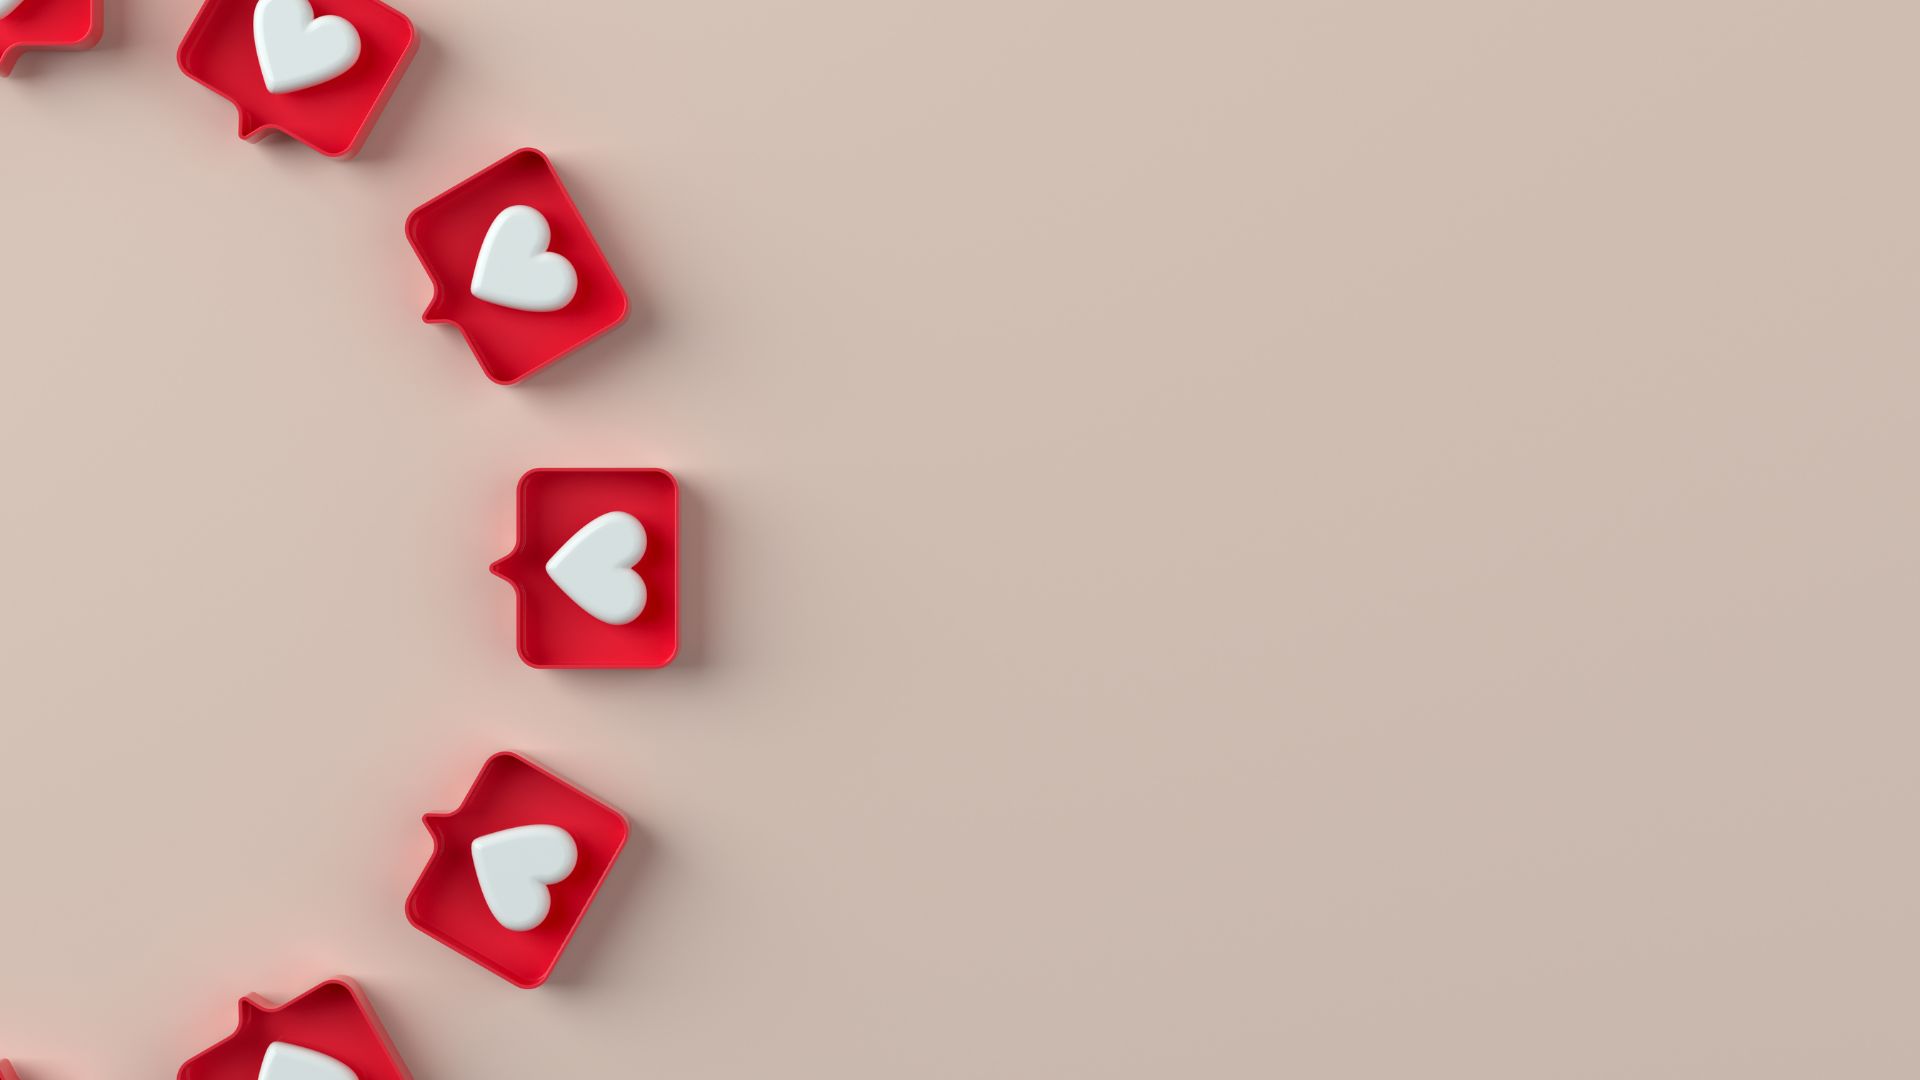 Imagem de fundo bege. Do lado esquerdo da tela, várias caixinhas de pensamento na cor vermelha e dentro de cada uma, pequenos corações na cor branca.